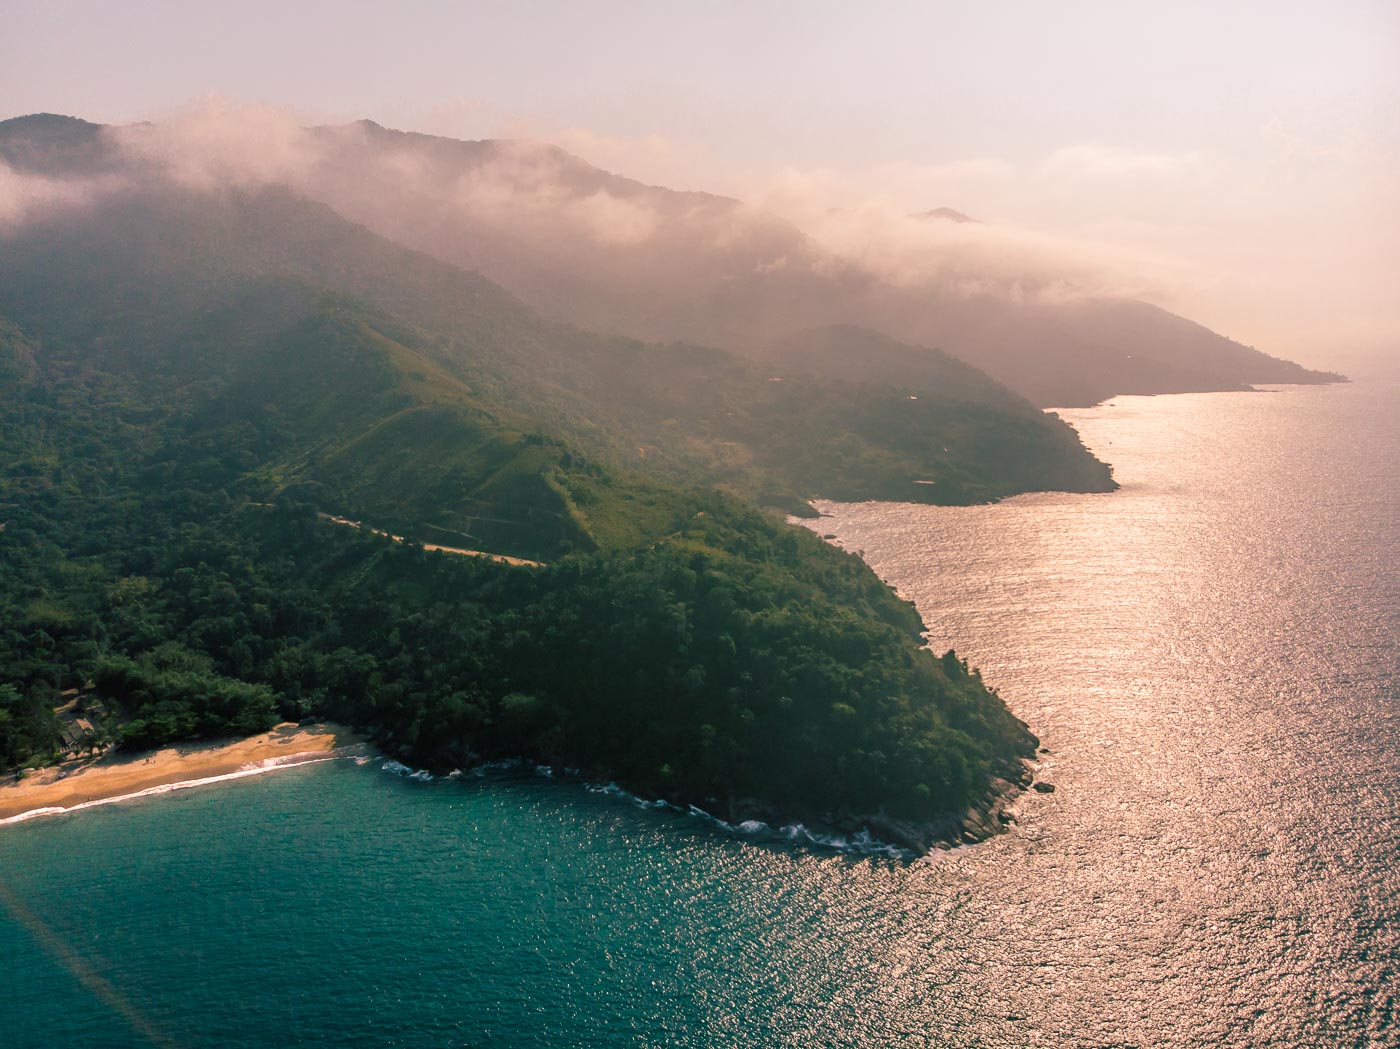 Vista aérea da costa da Ilhabela com muitas montanhas, o mar e a praia